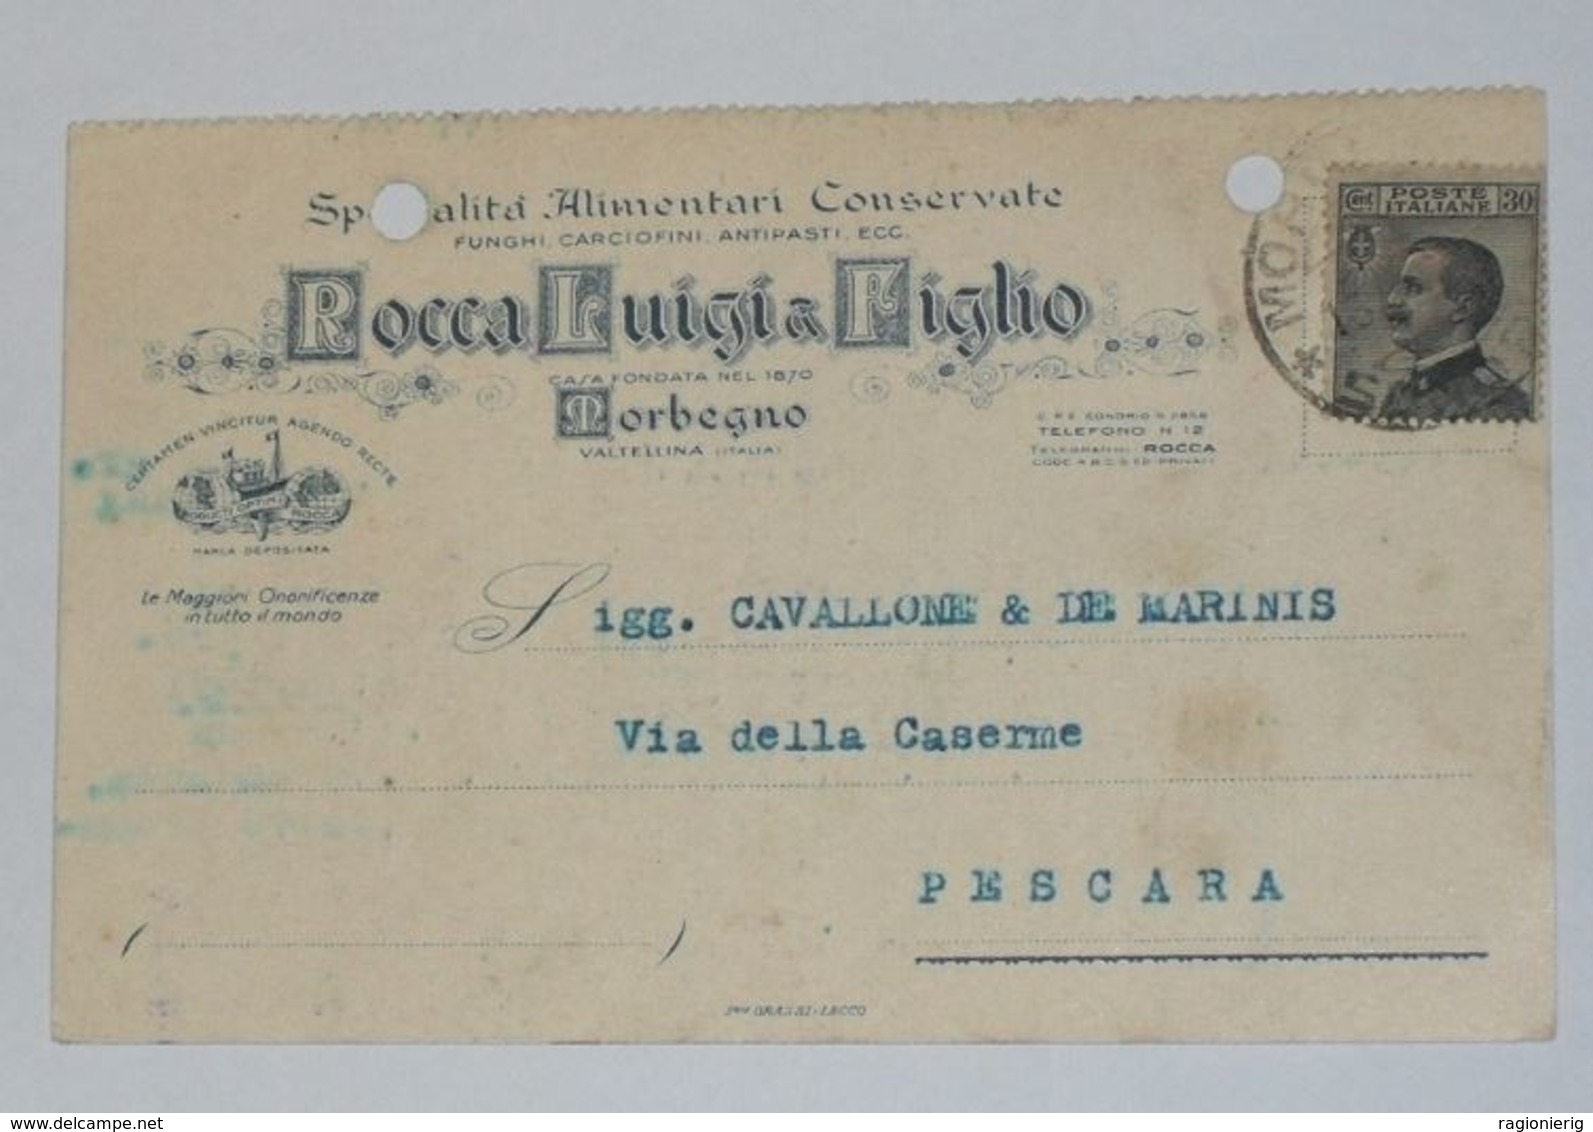 SONDRIO - Morbegno - Cartolina Pubblicitaria Commerciale Rocco Luigi & Figlio Specialità Alimentari Conservate - 1929 - Sondrio